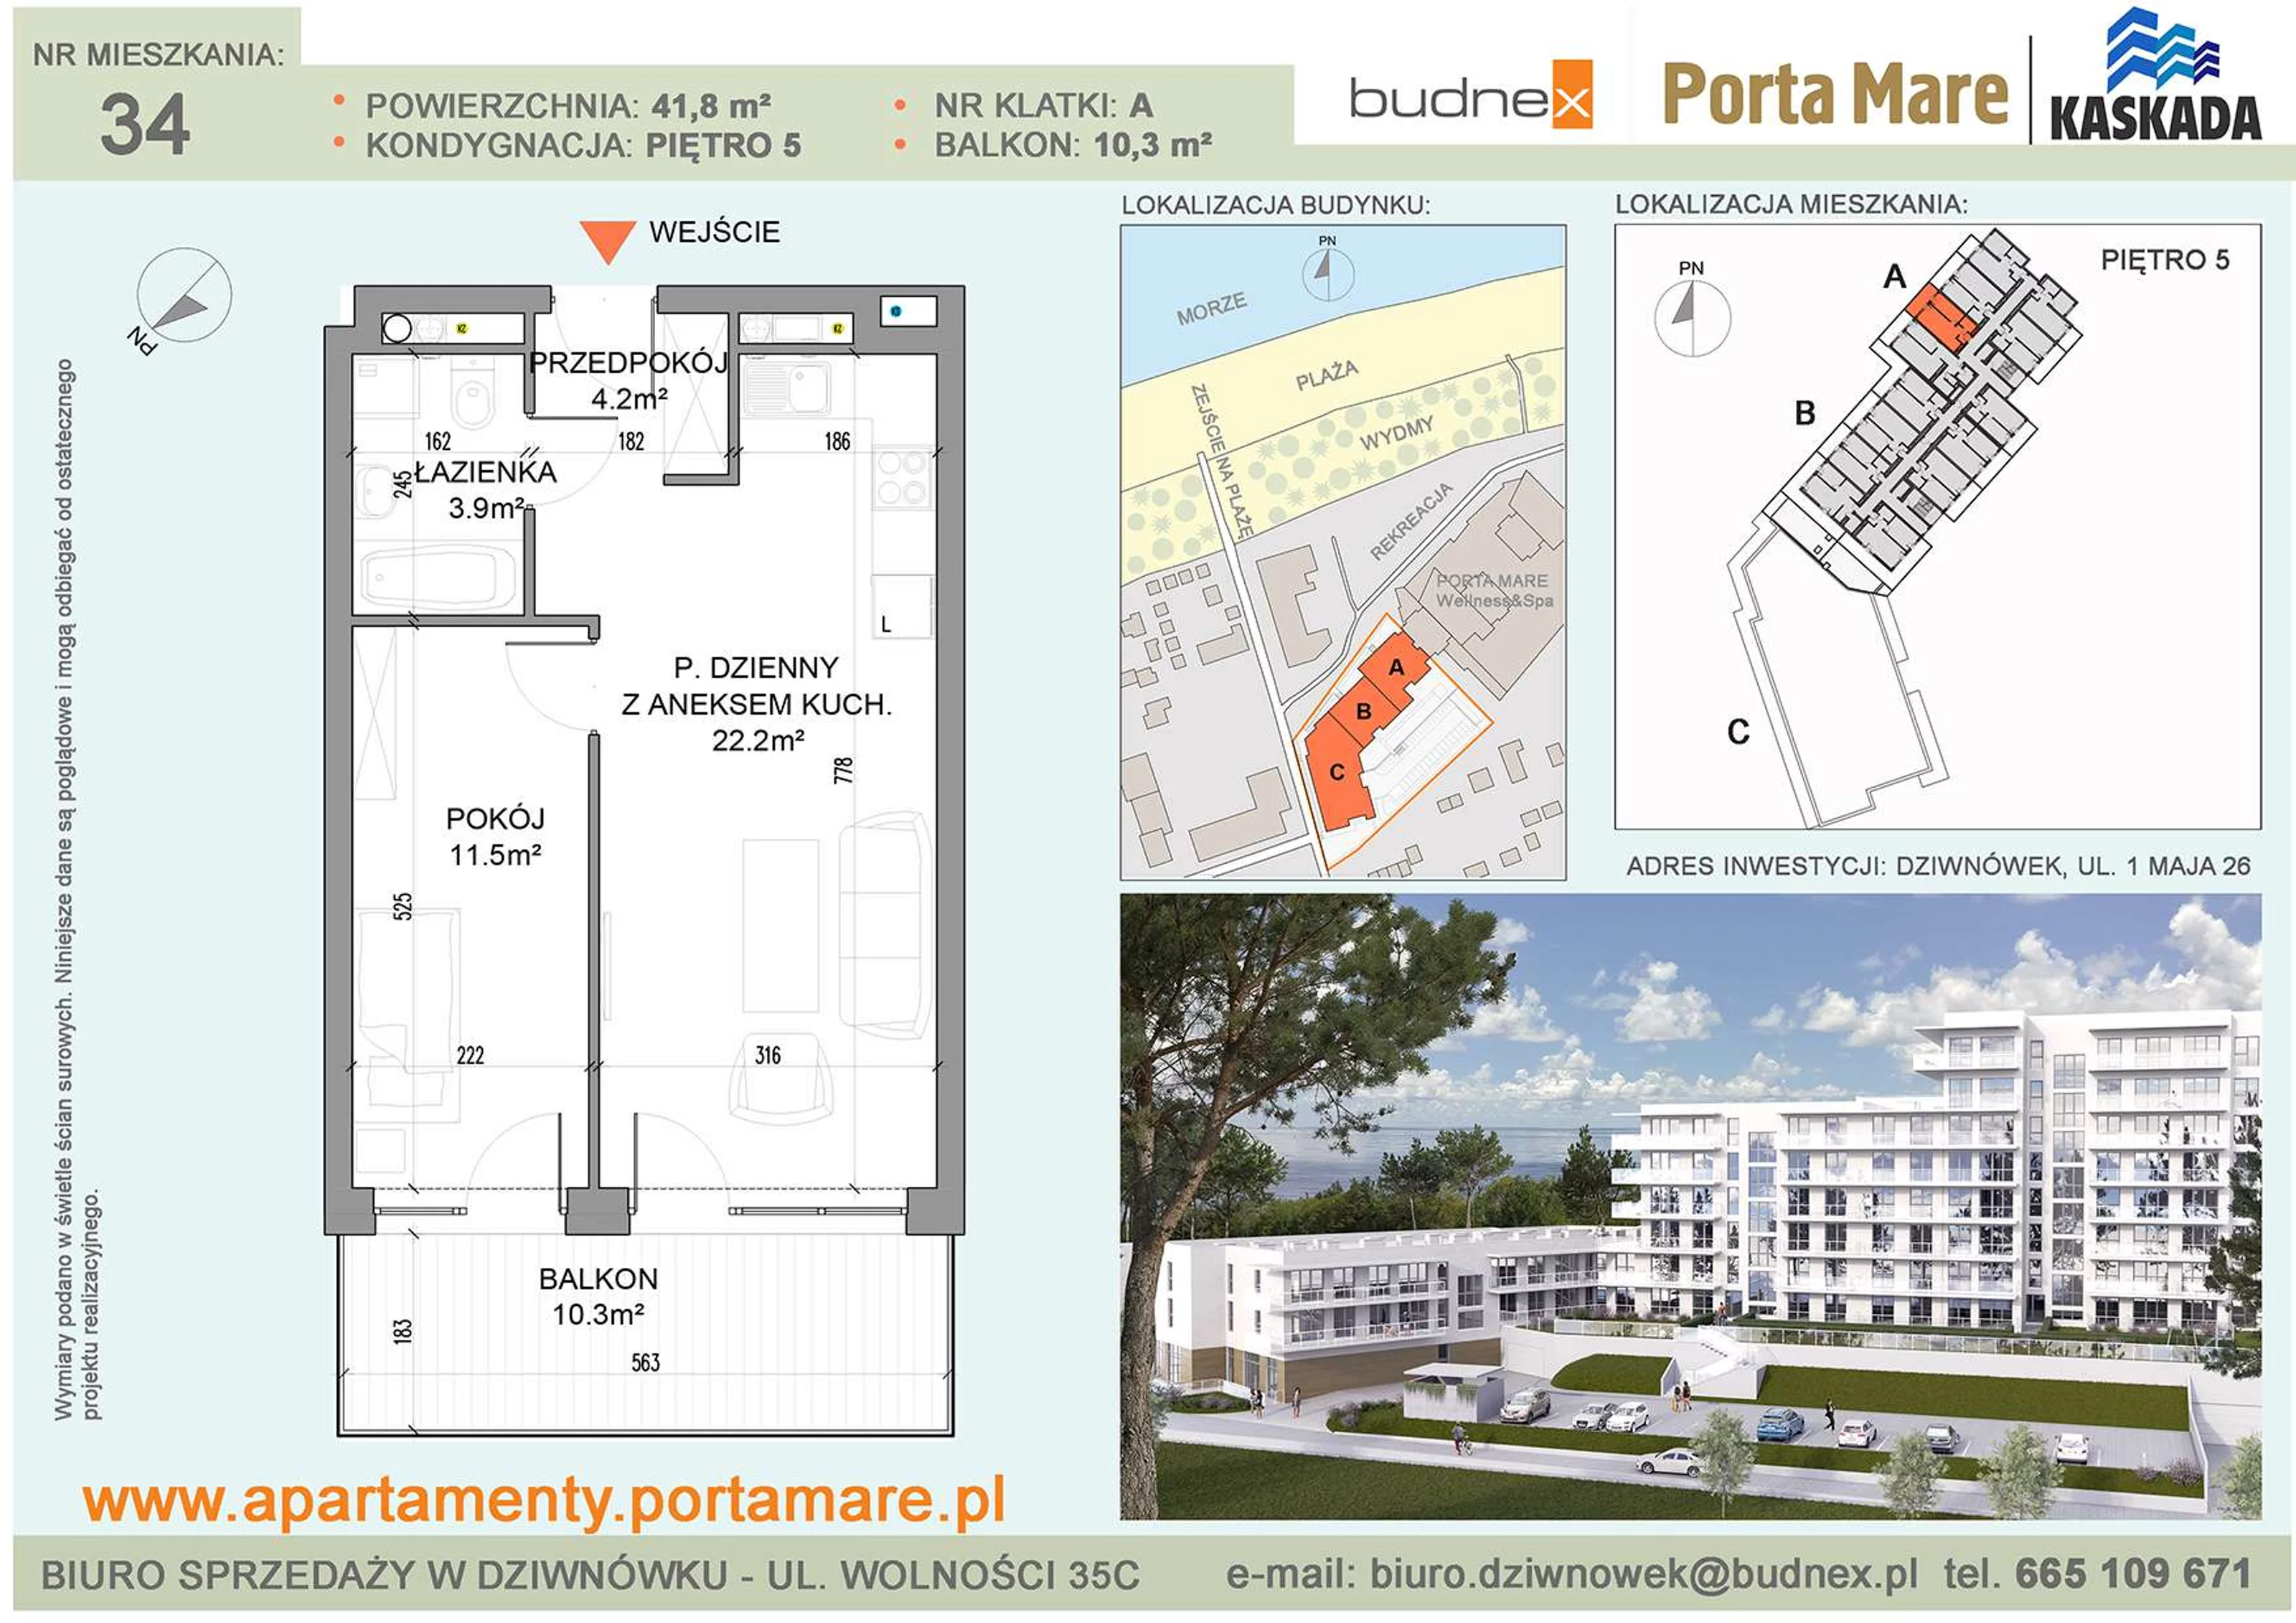 Apartament 41,80 m², piętro 5, oferta nr A/M34, Porta Mare Kaskada, Dziwnówek, ul. 1 Maja 26